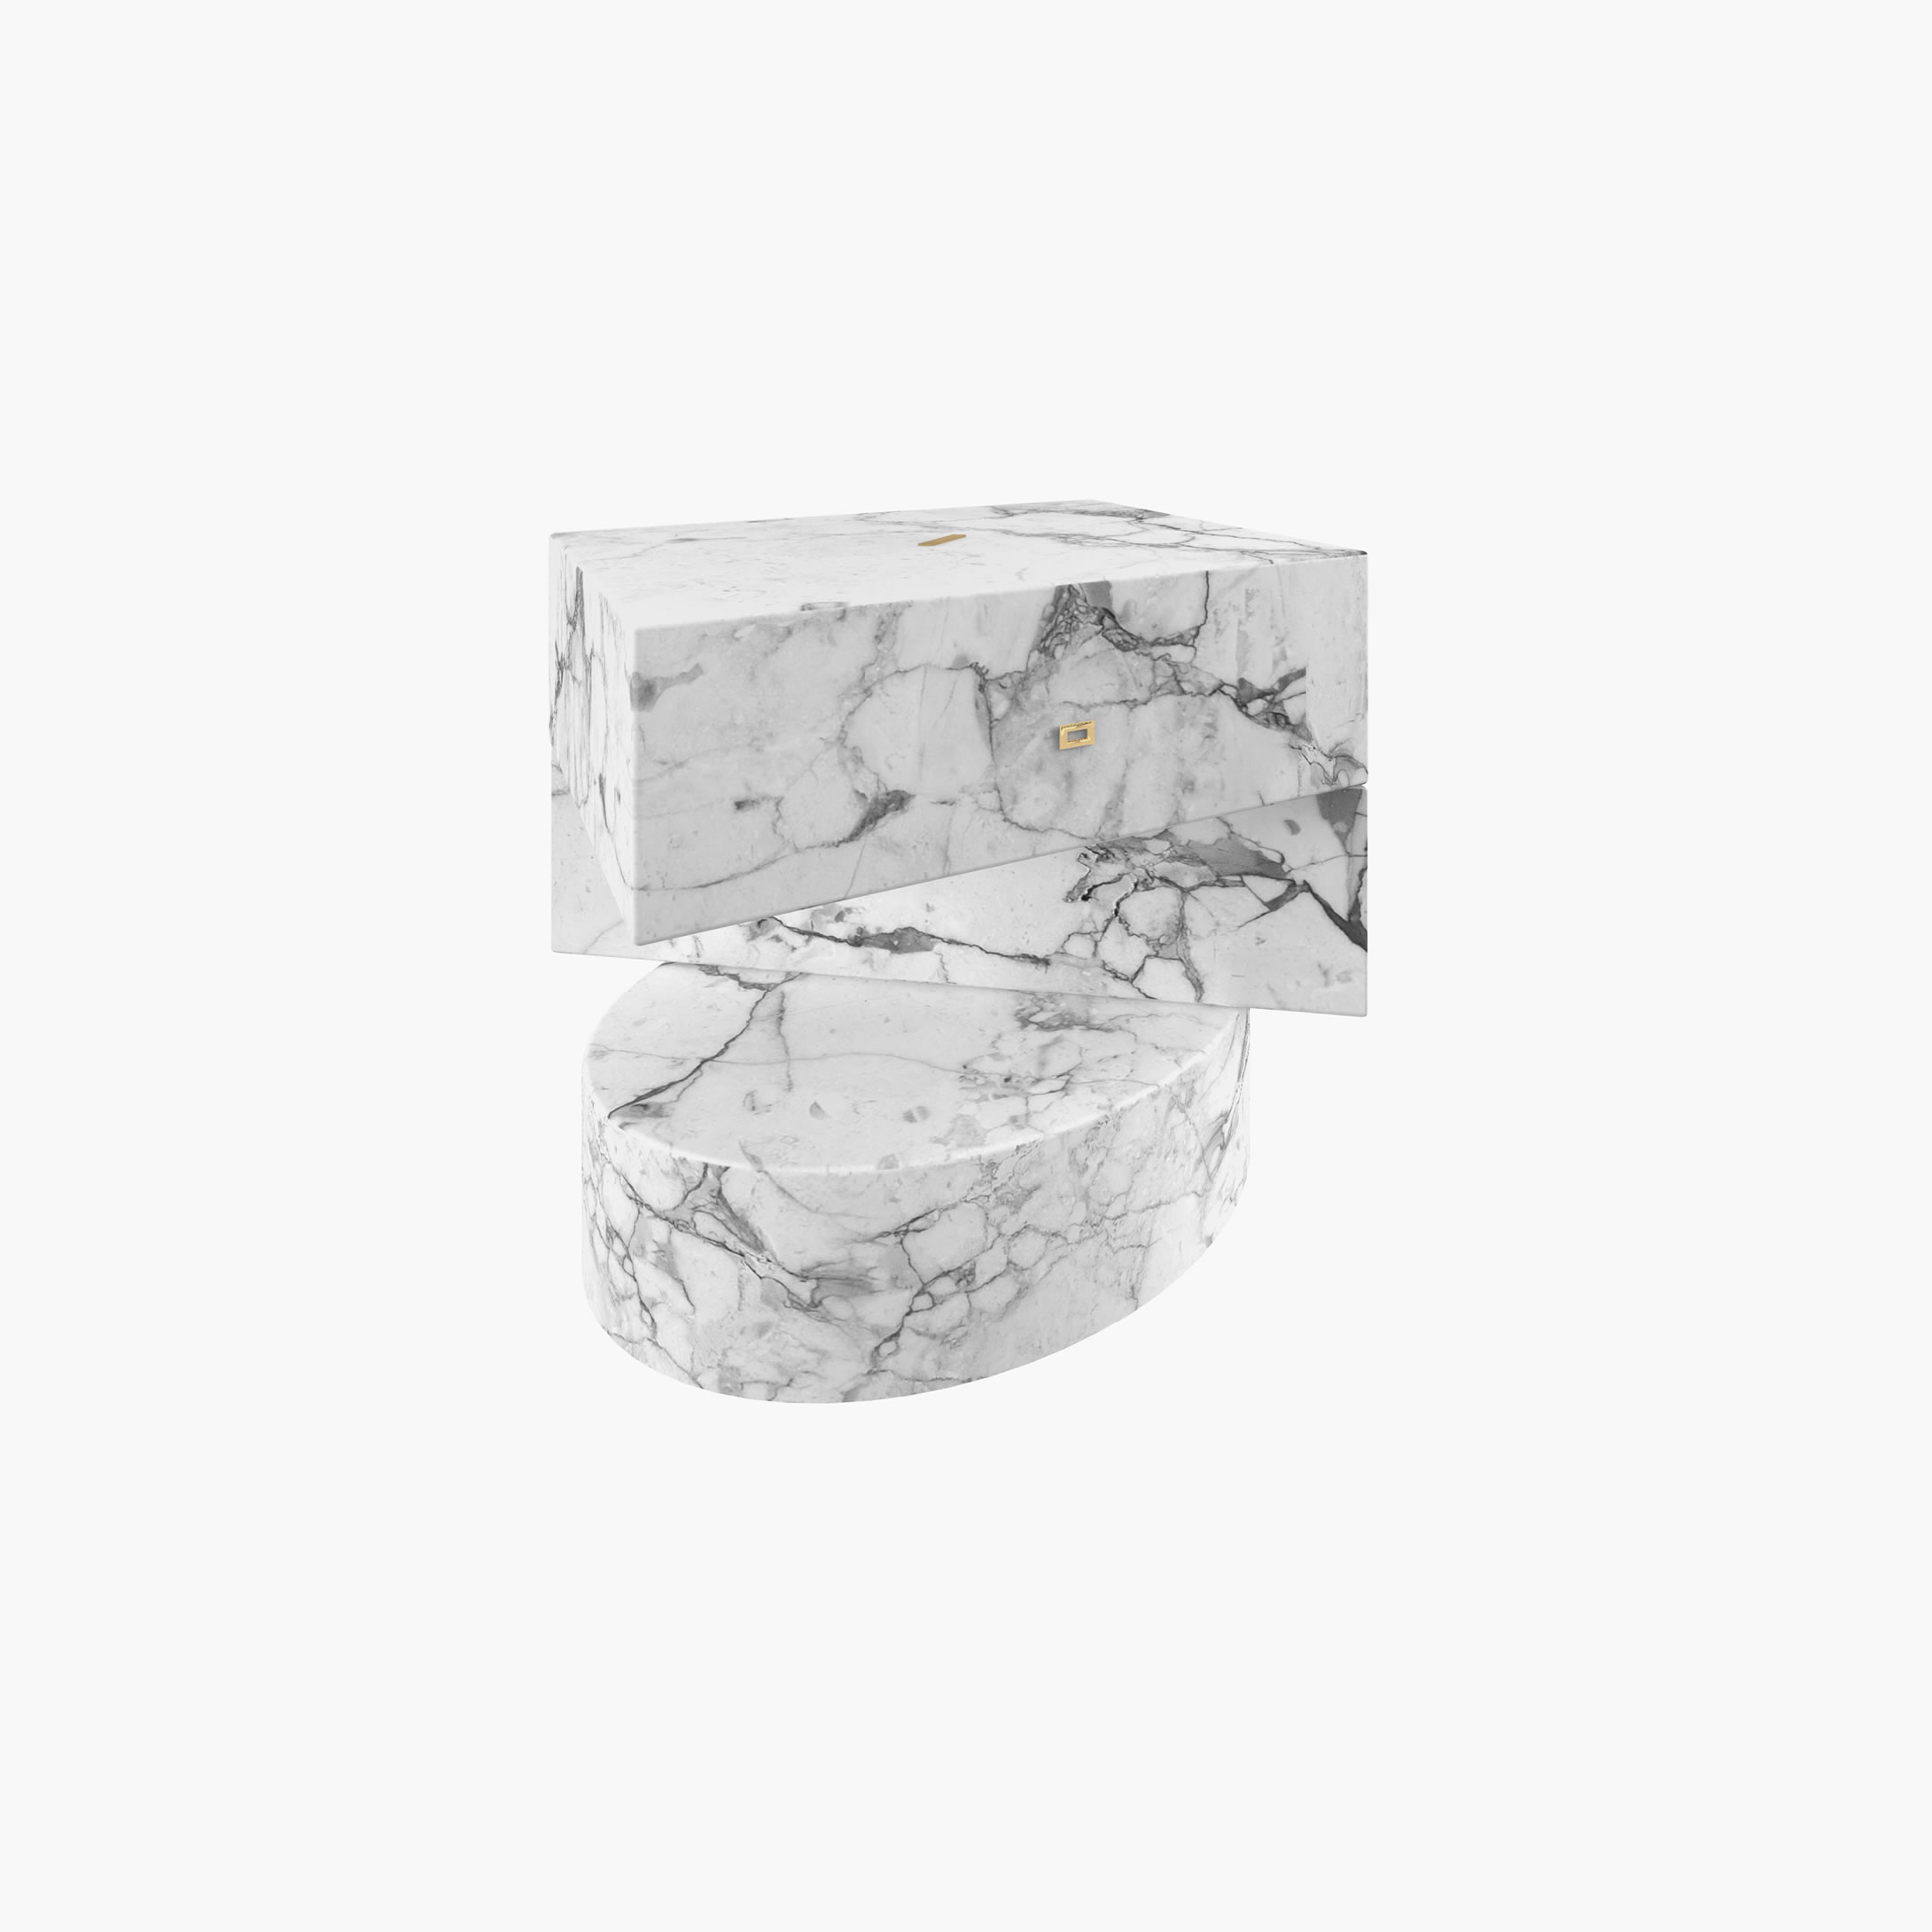 Beistelltisch Zylinder Quader Prisma Weiss Arabescato Marmor wunderschoenen Wohnzimmer Kunstwerk Beistelltische FS 124 FELIX SCHWAKE